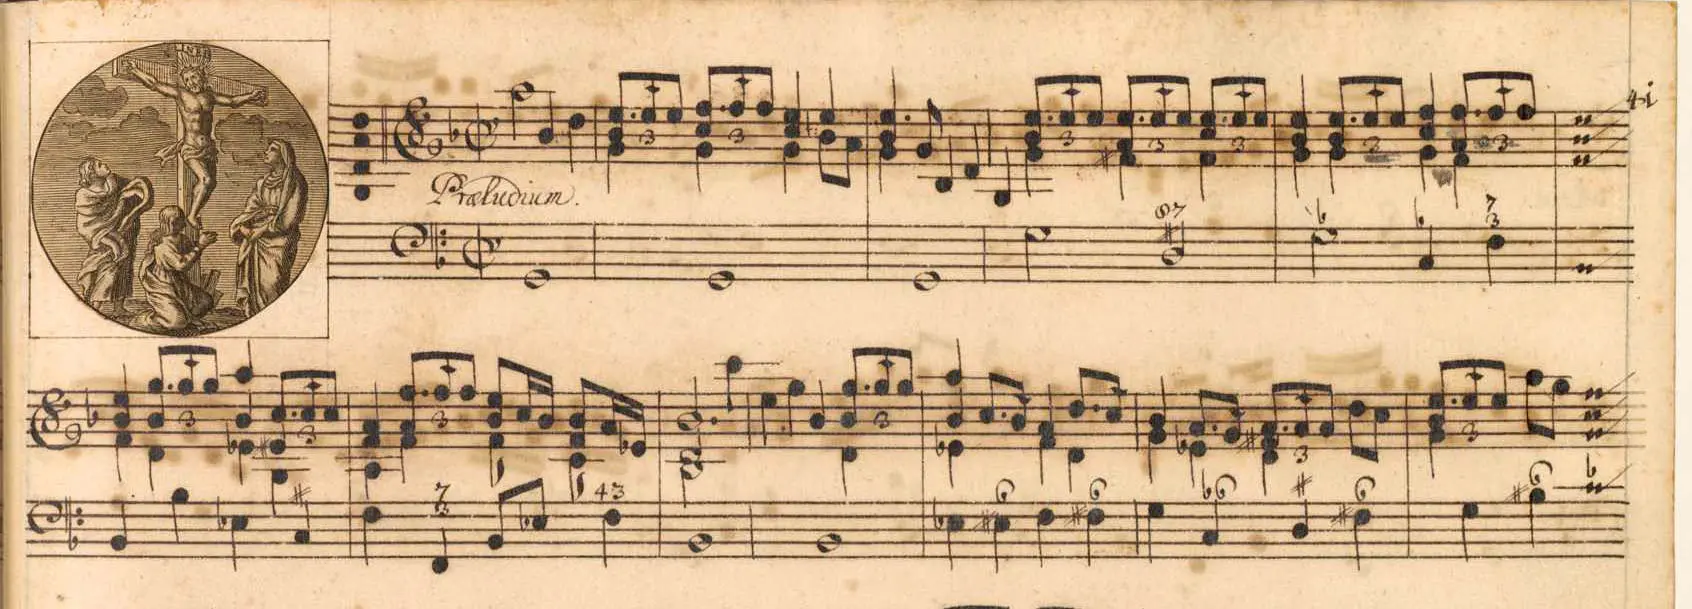 cuartetos barrocos para soprano violin flauta y bajo contuno - Cuál es el ritmo en la música barroca